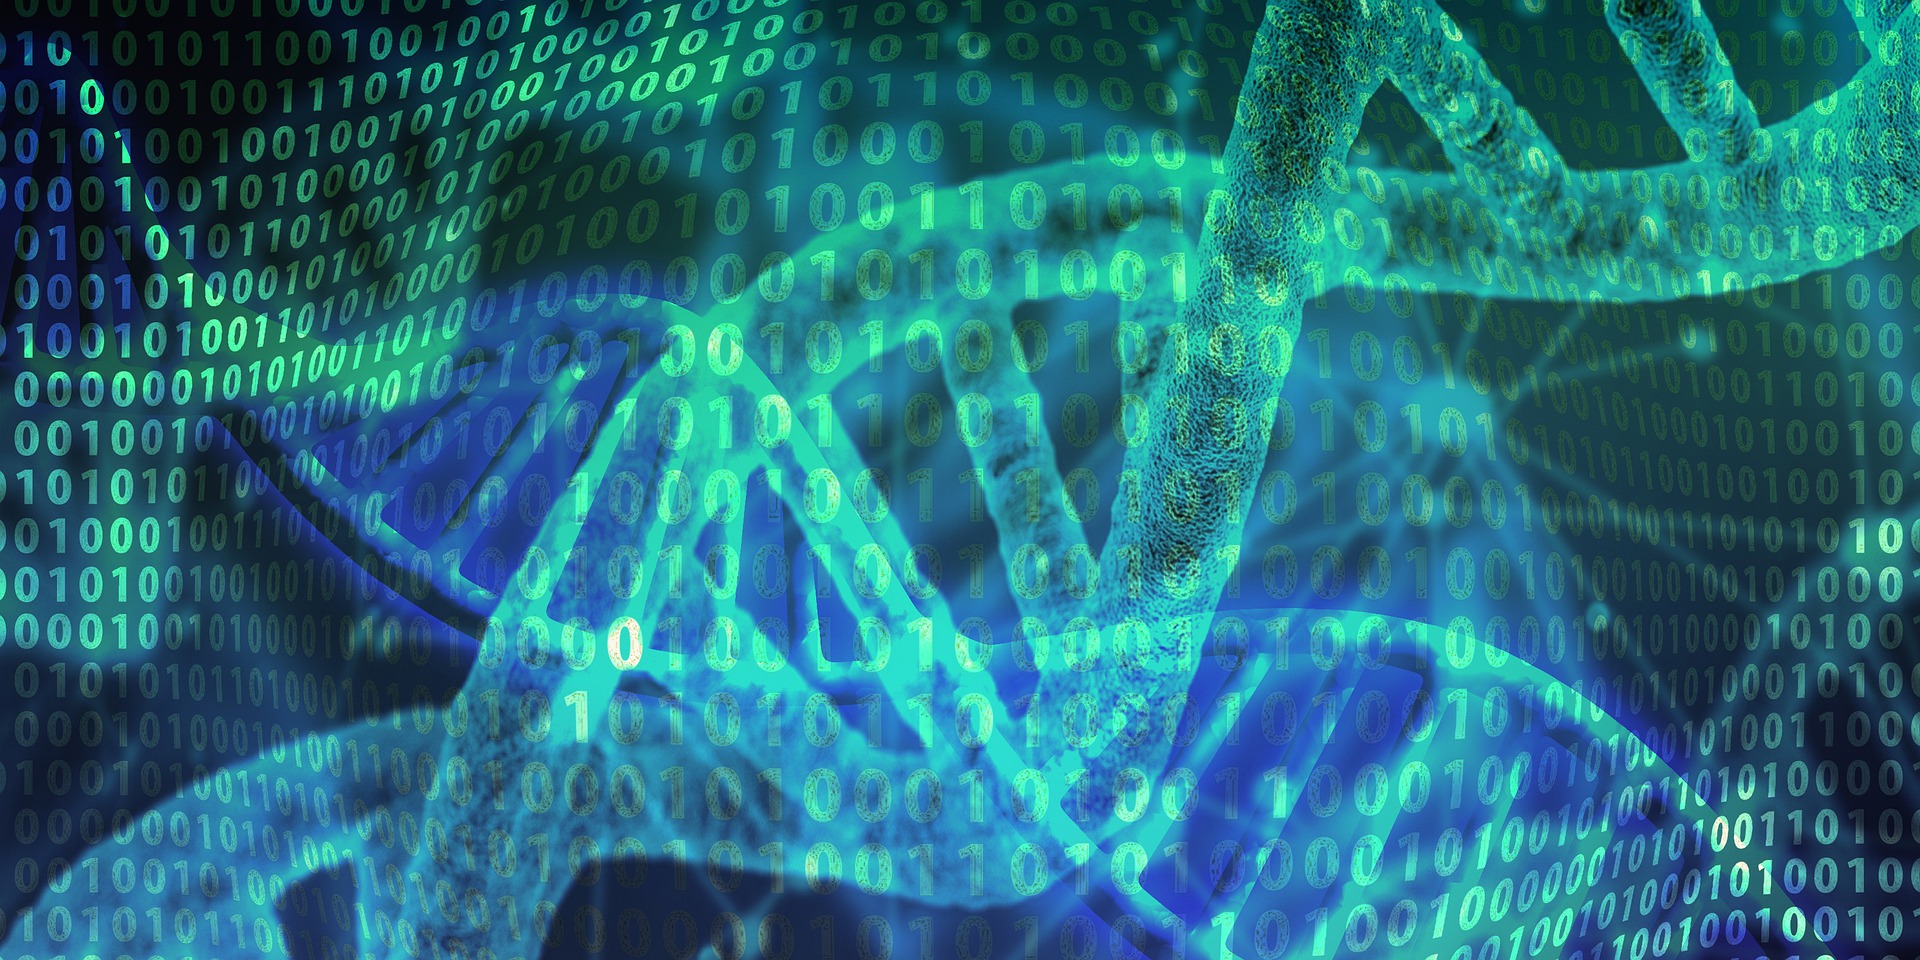 DNA jako nośnik danych coraz bliżej. Naukowcy dodali siedem dodatkowych liter do molekularnego alfabetu